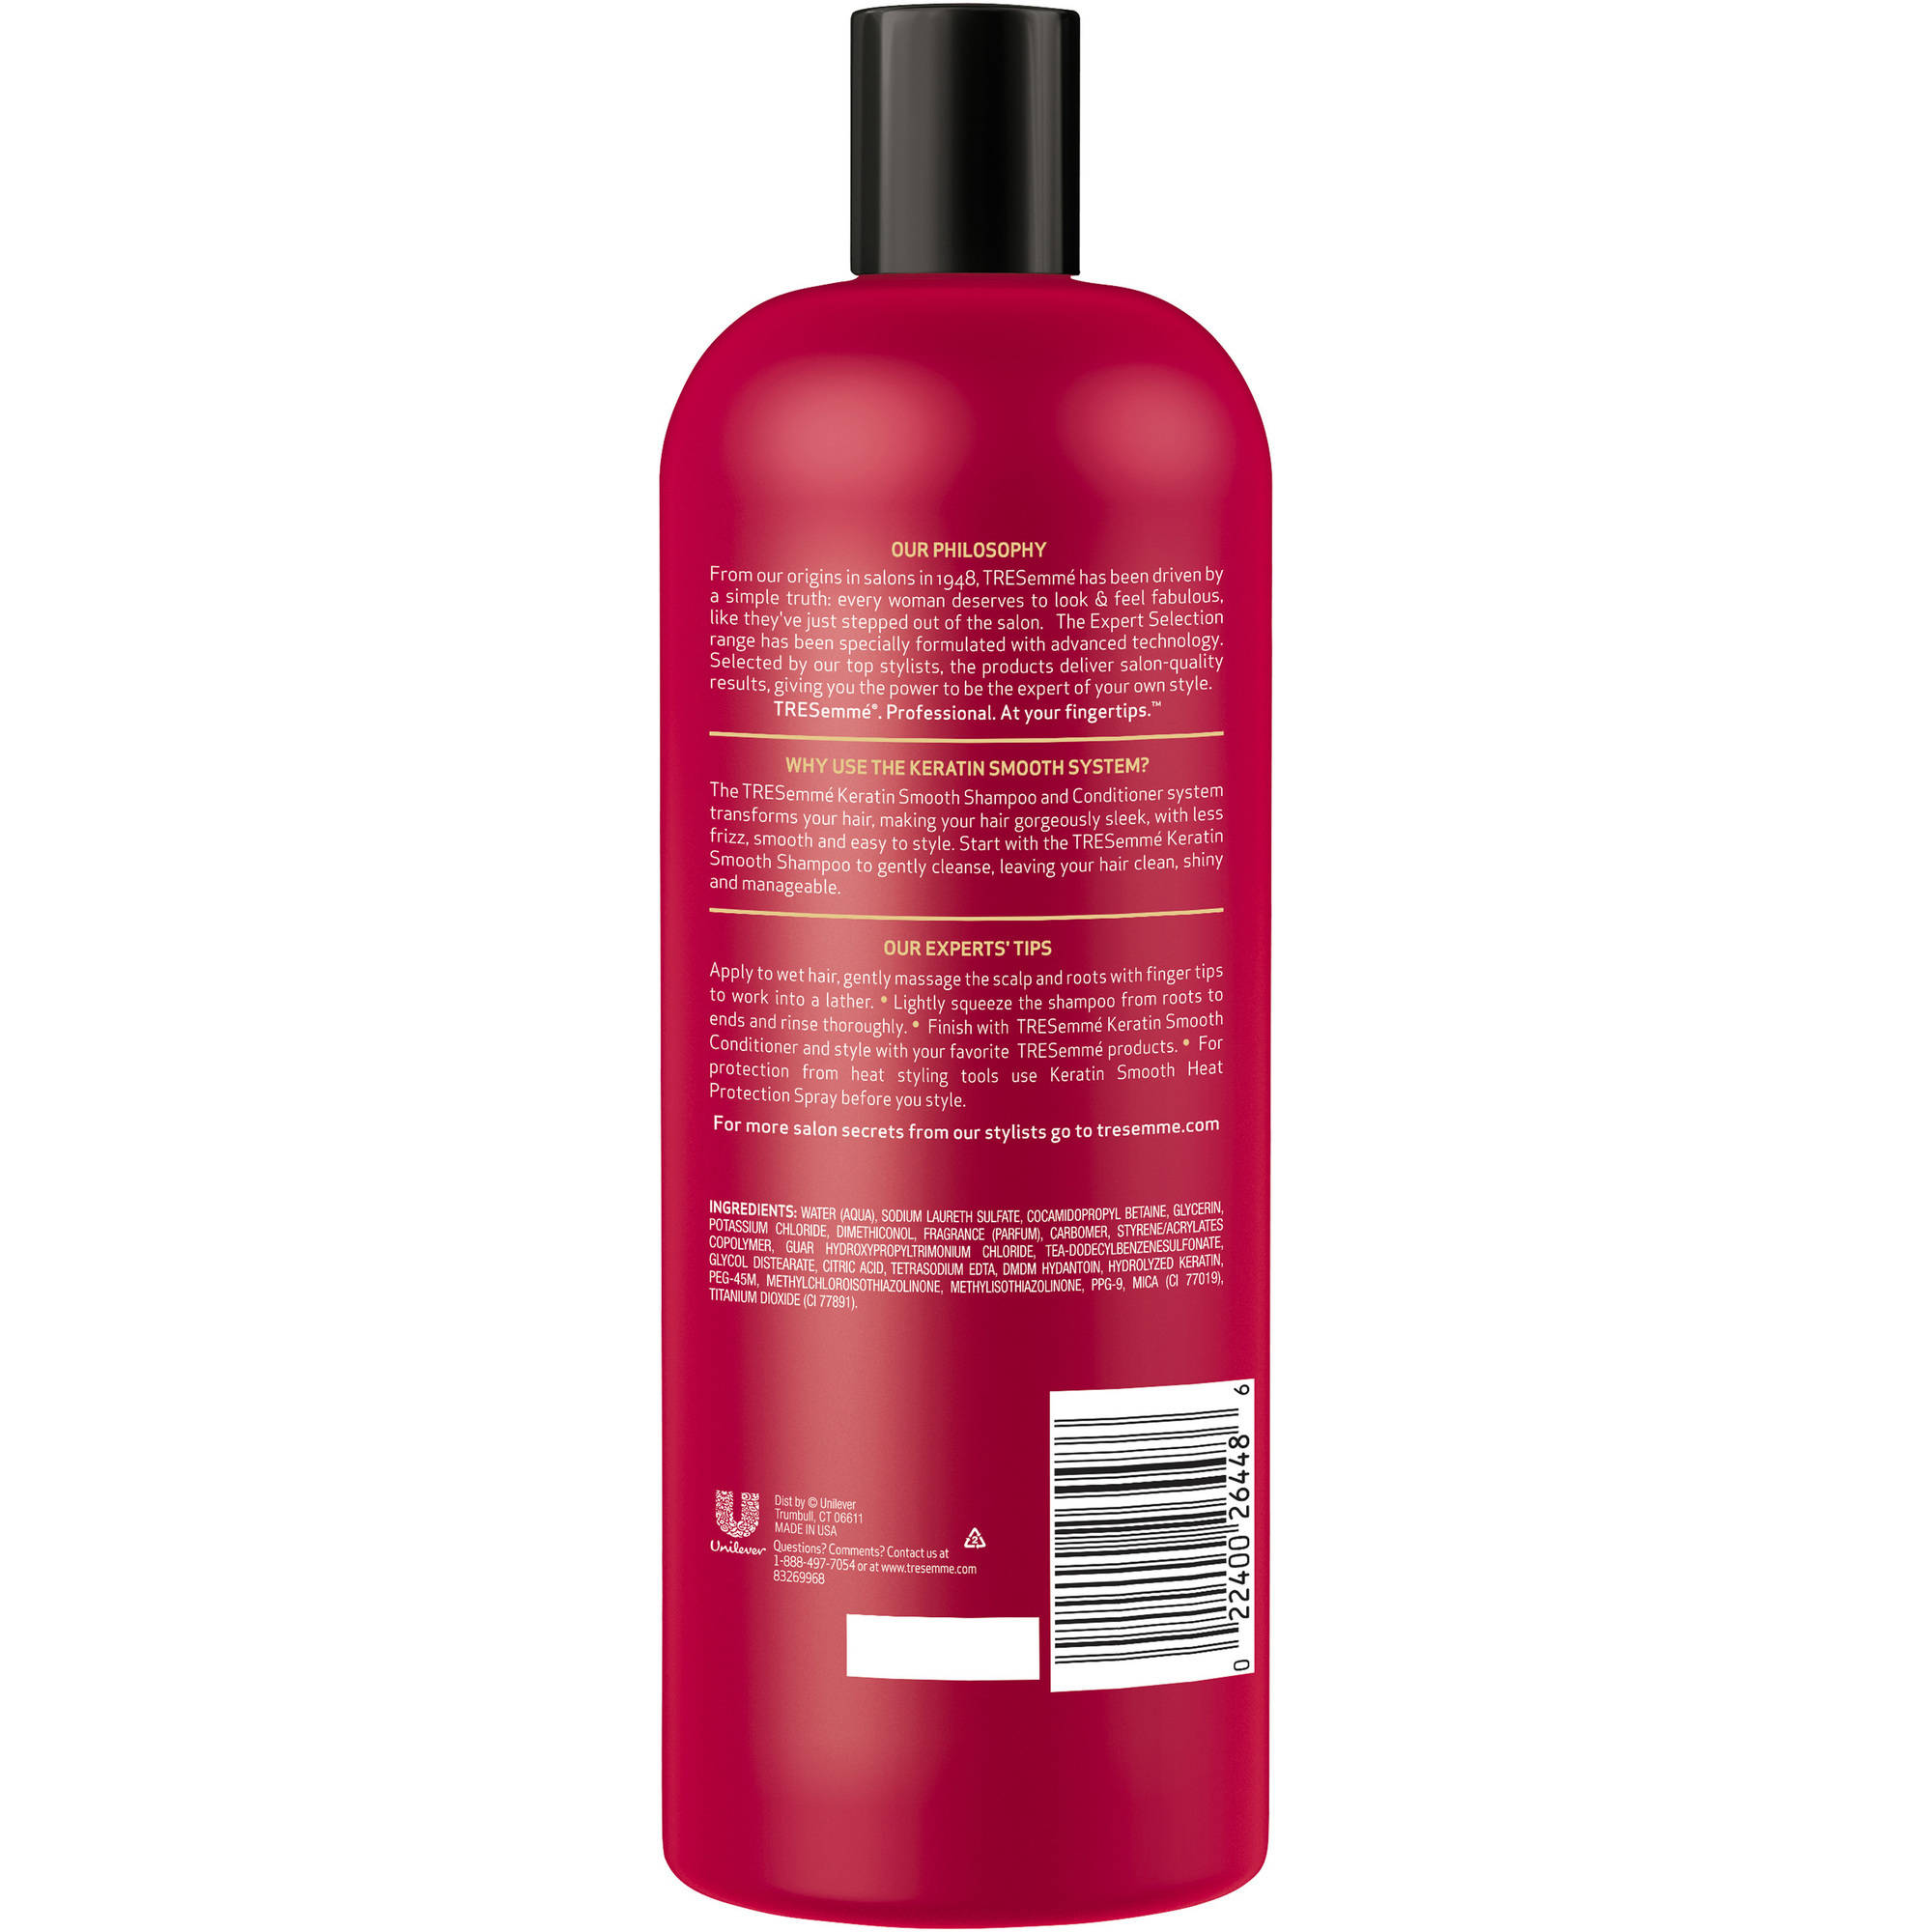 TRESemme Expert Selection Keratin Smooth Shampoo, 25 oz - image 3 of 3